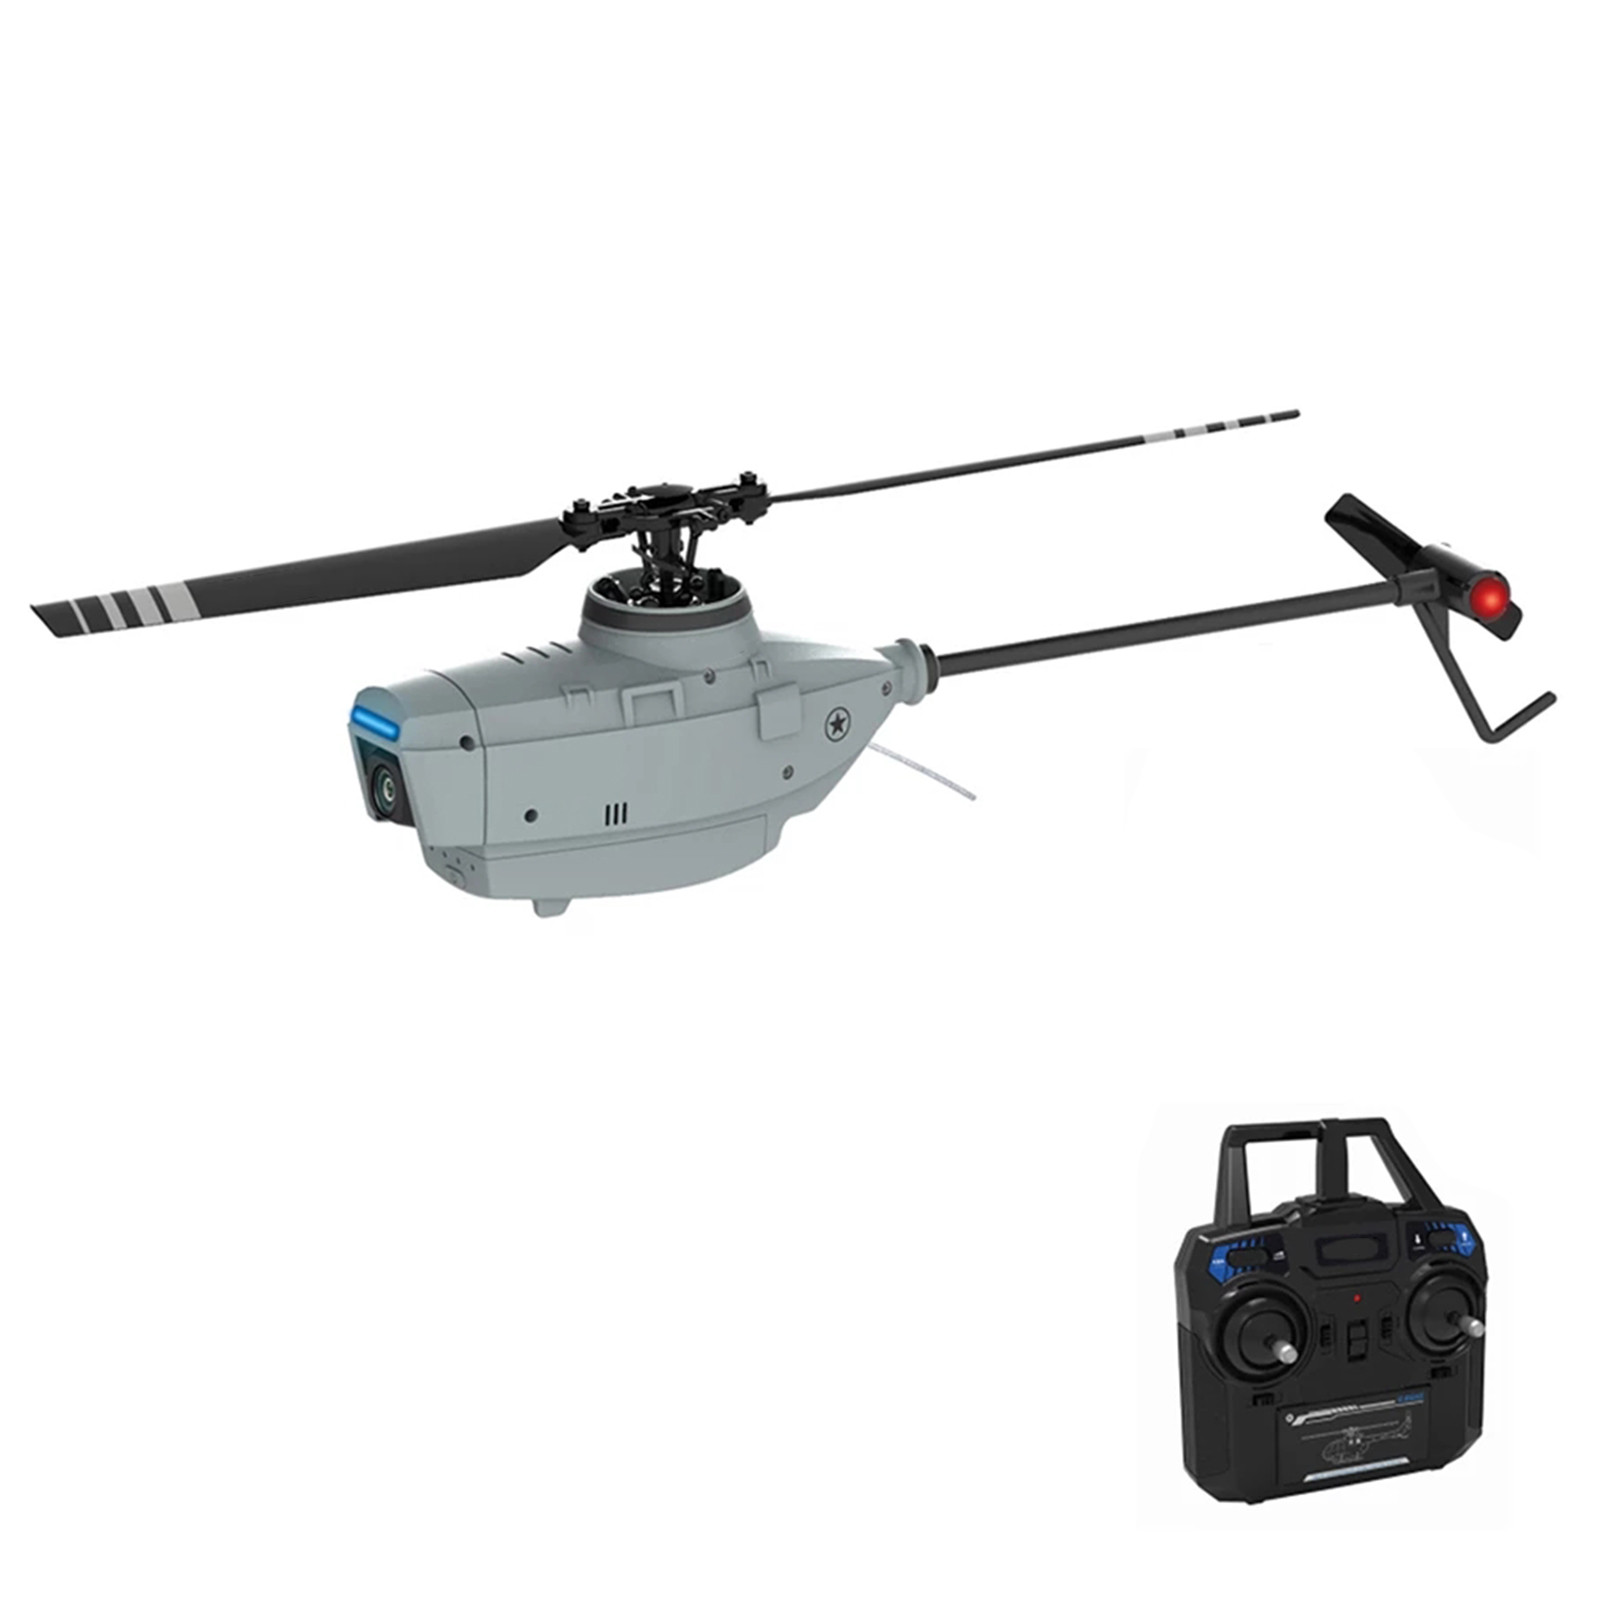 Fishing drone tips, POSEIDON-480 PRO II